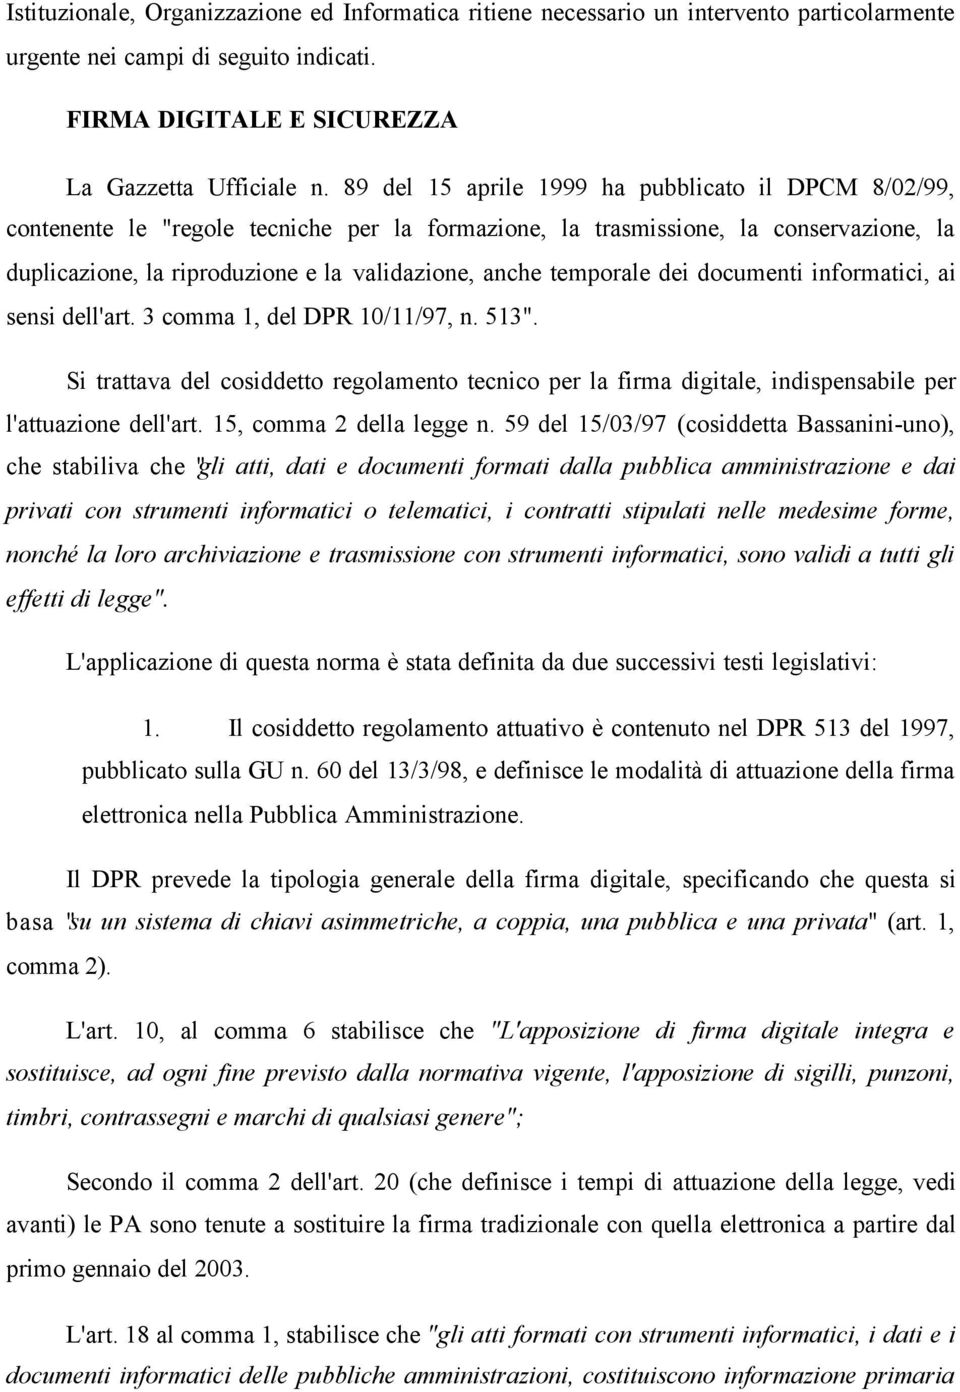 temporale dei documenti informatici, ai sensi dell'art. 3 comma 1, del DPR 10/11/97, n. 513".